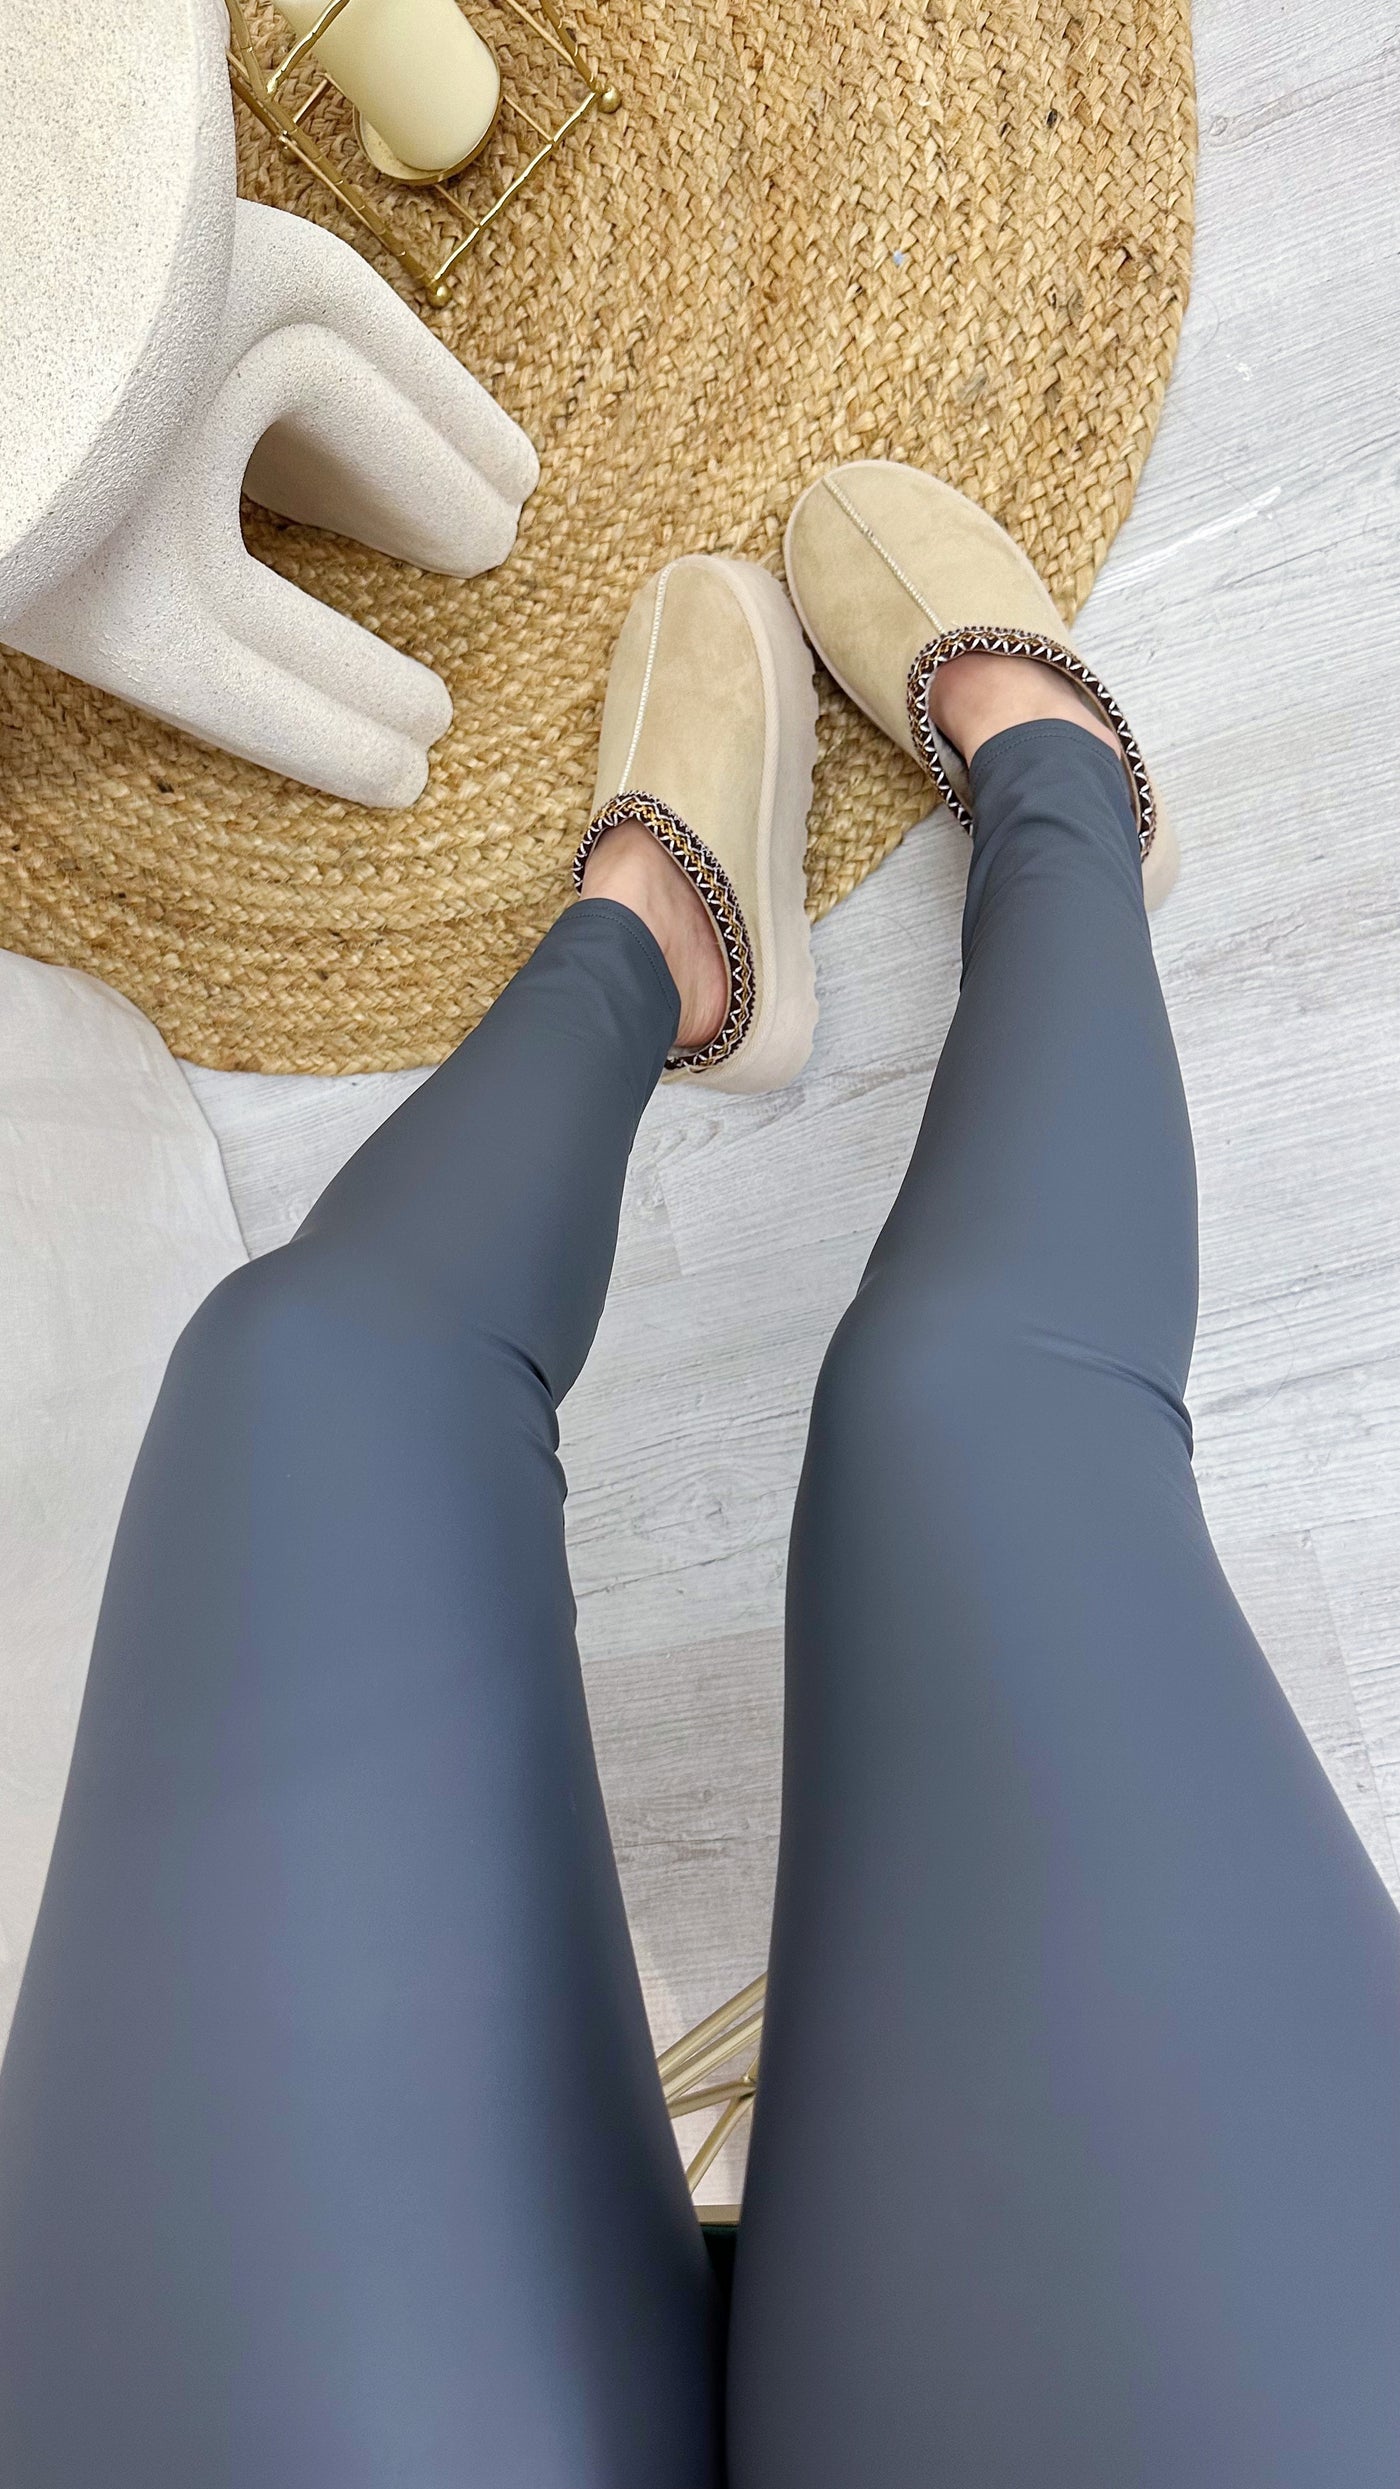 Leather Look Leggings - Grey